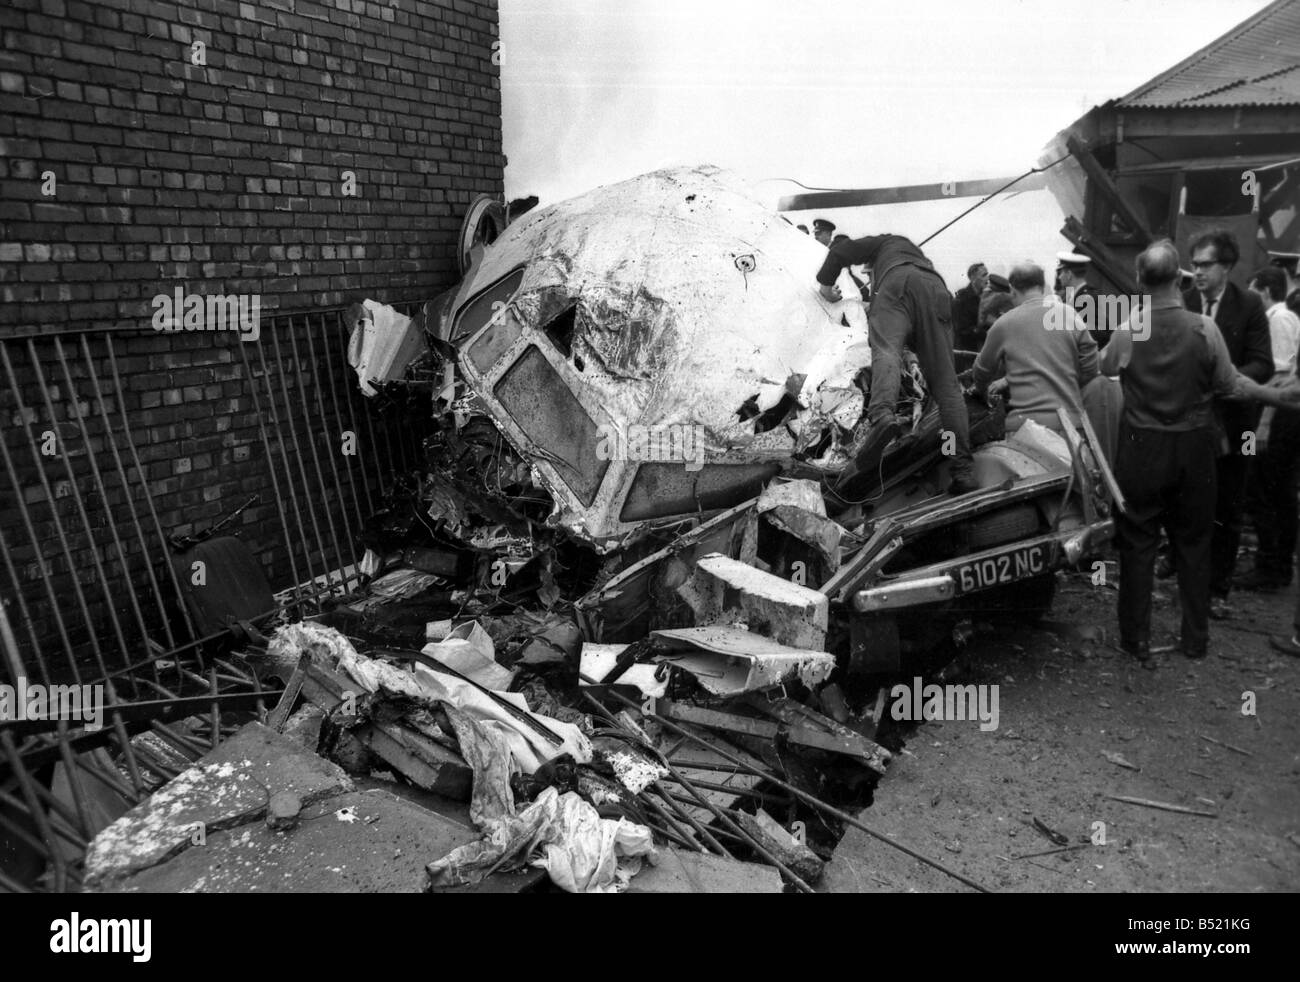 Die Stockport Luft Katastrophe Juni 1967 72 Passagiere und Besatzungsmitglieder wurden getötet, als ein Flug British Midland stürzte, während versuchend, Manchester Airport landen. Das Flugzeug fiel ein Canadair C-4 Argonaut G-ALHG aus dem Himmel als Motorschaden zu einem Verlust der Kontrolle führte. Die Passagieren stand kaum eine Chance des Überlebens, so ist es bemerkenswert, dass 12 Überlebenden gab, gab es keine Todesfälle auf dem Boden. Crash-Opfer starb entsetzlich, nachdem er von den einstürzenden sitzen auf der Ebene wie die Ausbreitung von Feuer gefangen. Die Retter sah mit Entsetzen, als sie sahen Menschen sterben Stockfoto